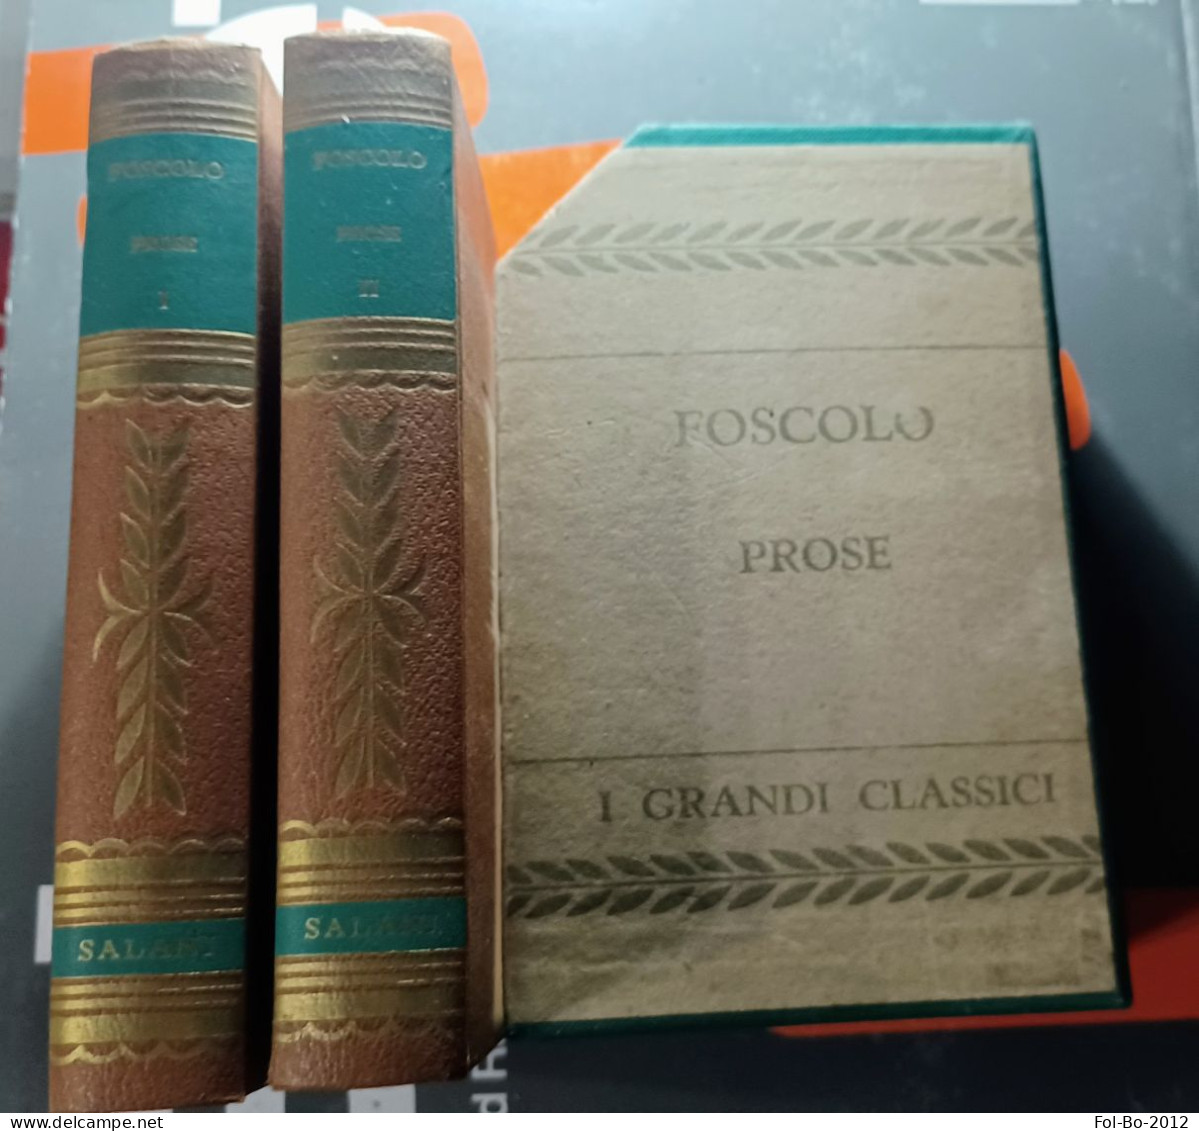 Foscolo Prose Salani Editore Anno ? - Poëzie